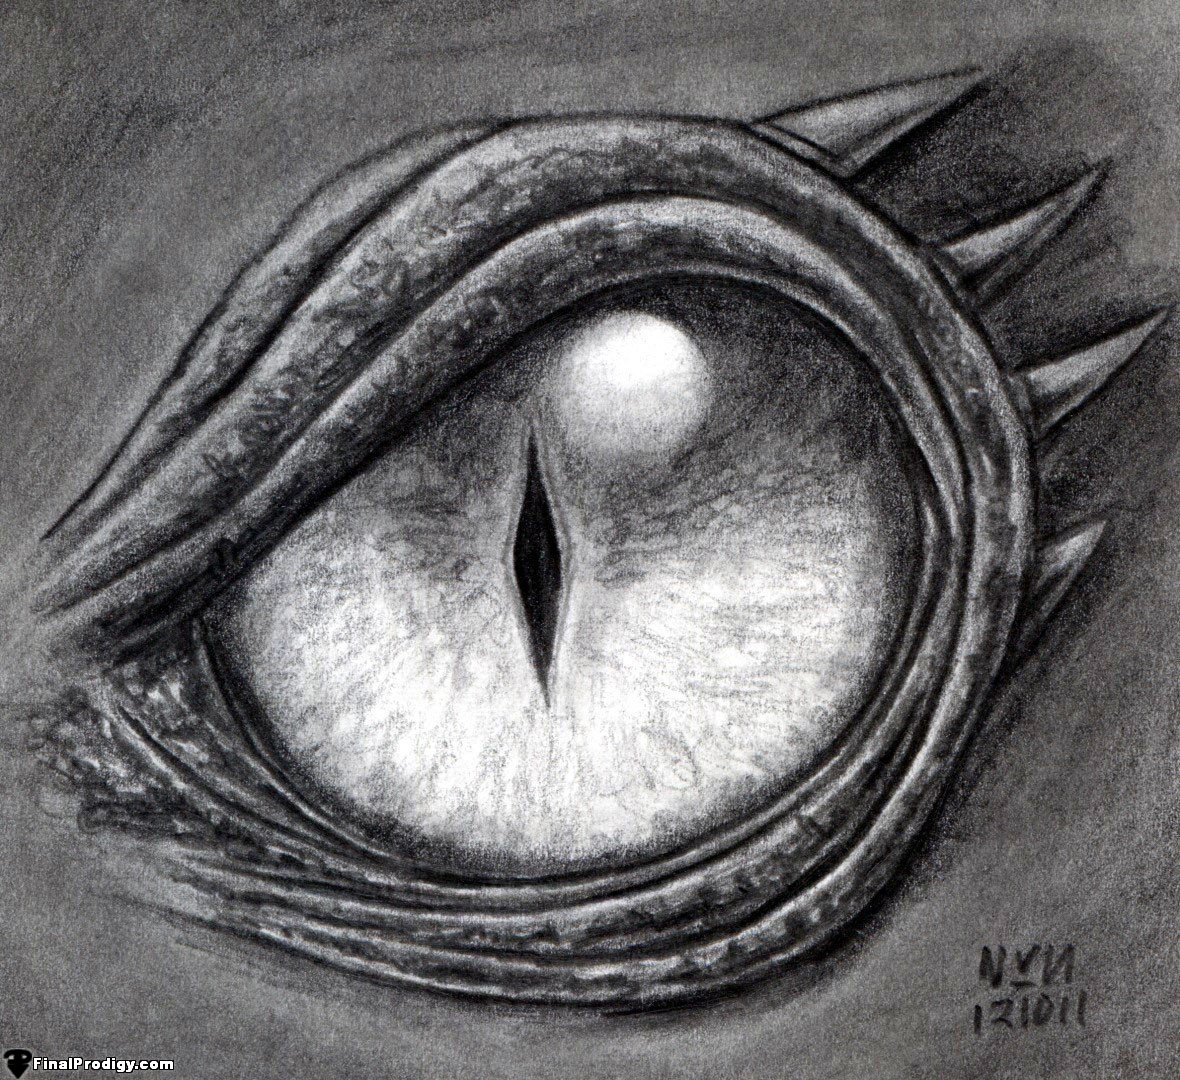 TOTK] [OC] Light Dragon's Eye drawing I just finished! :D : r/zelda